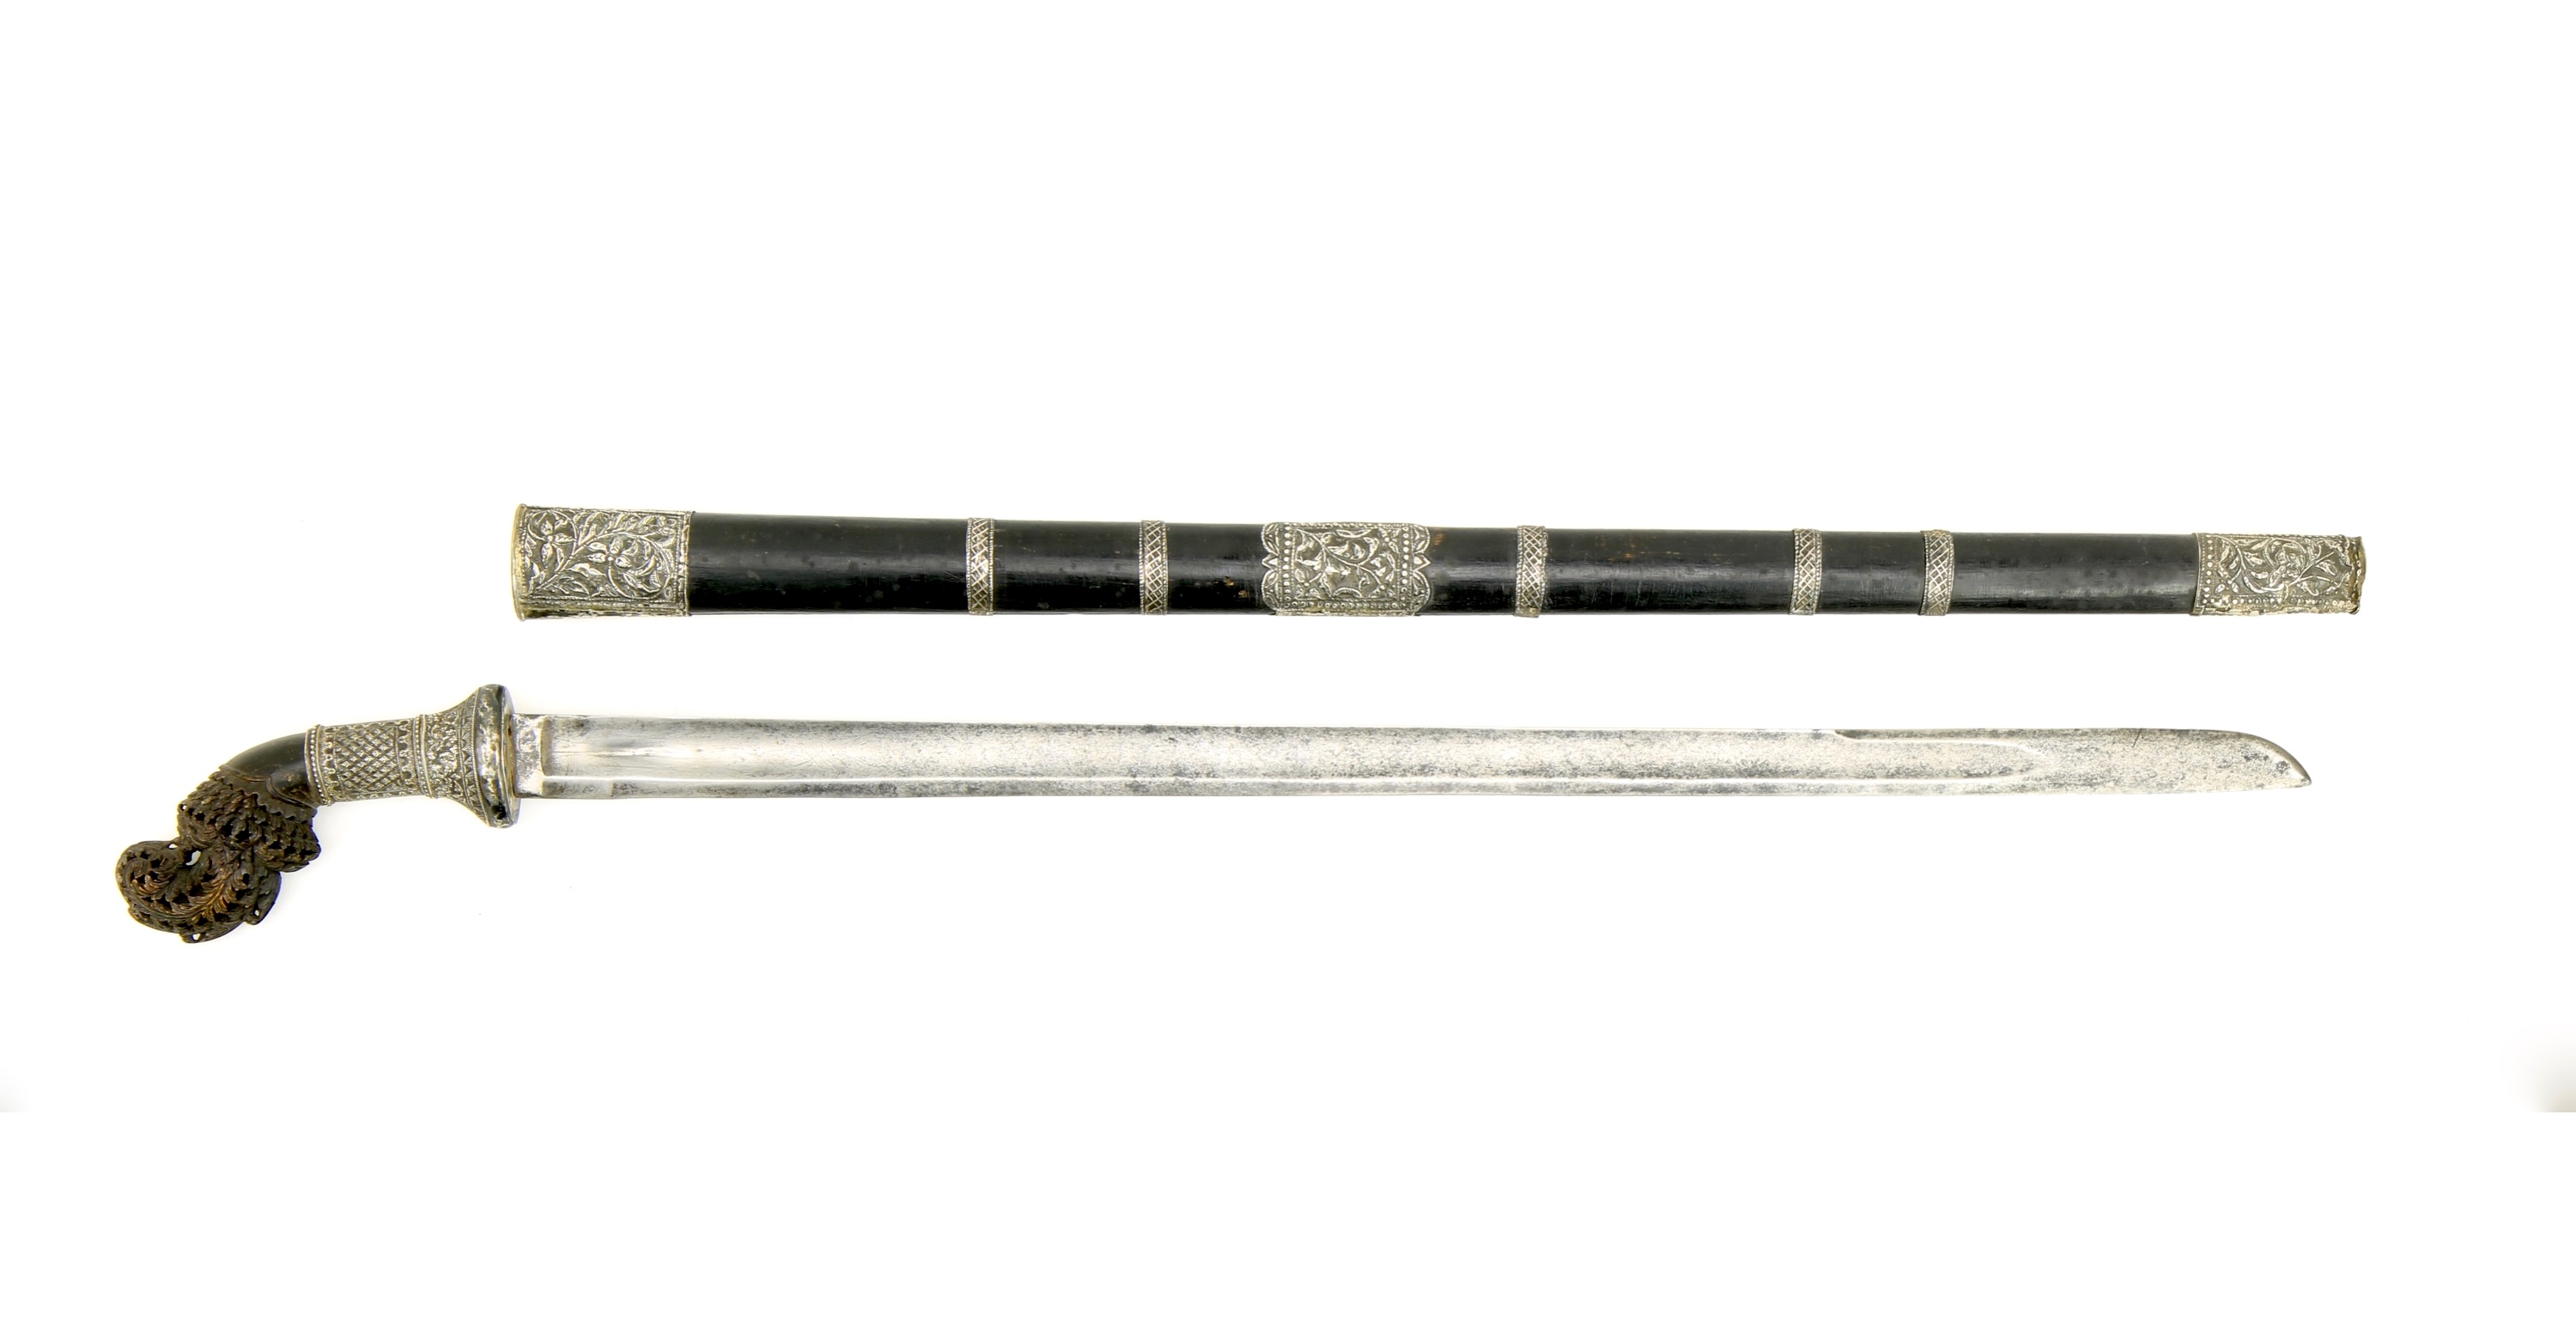 Palembang sword with European blade